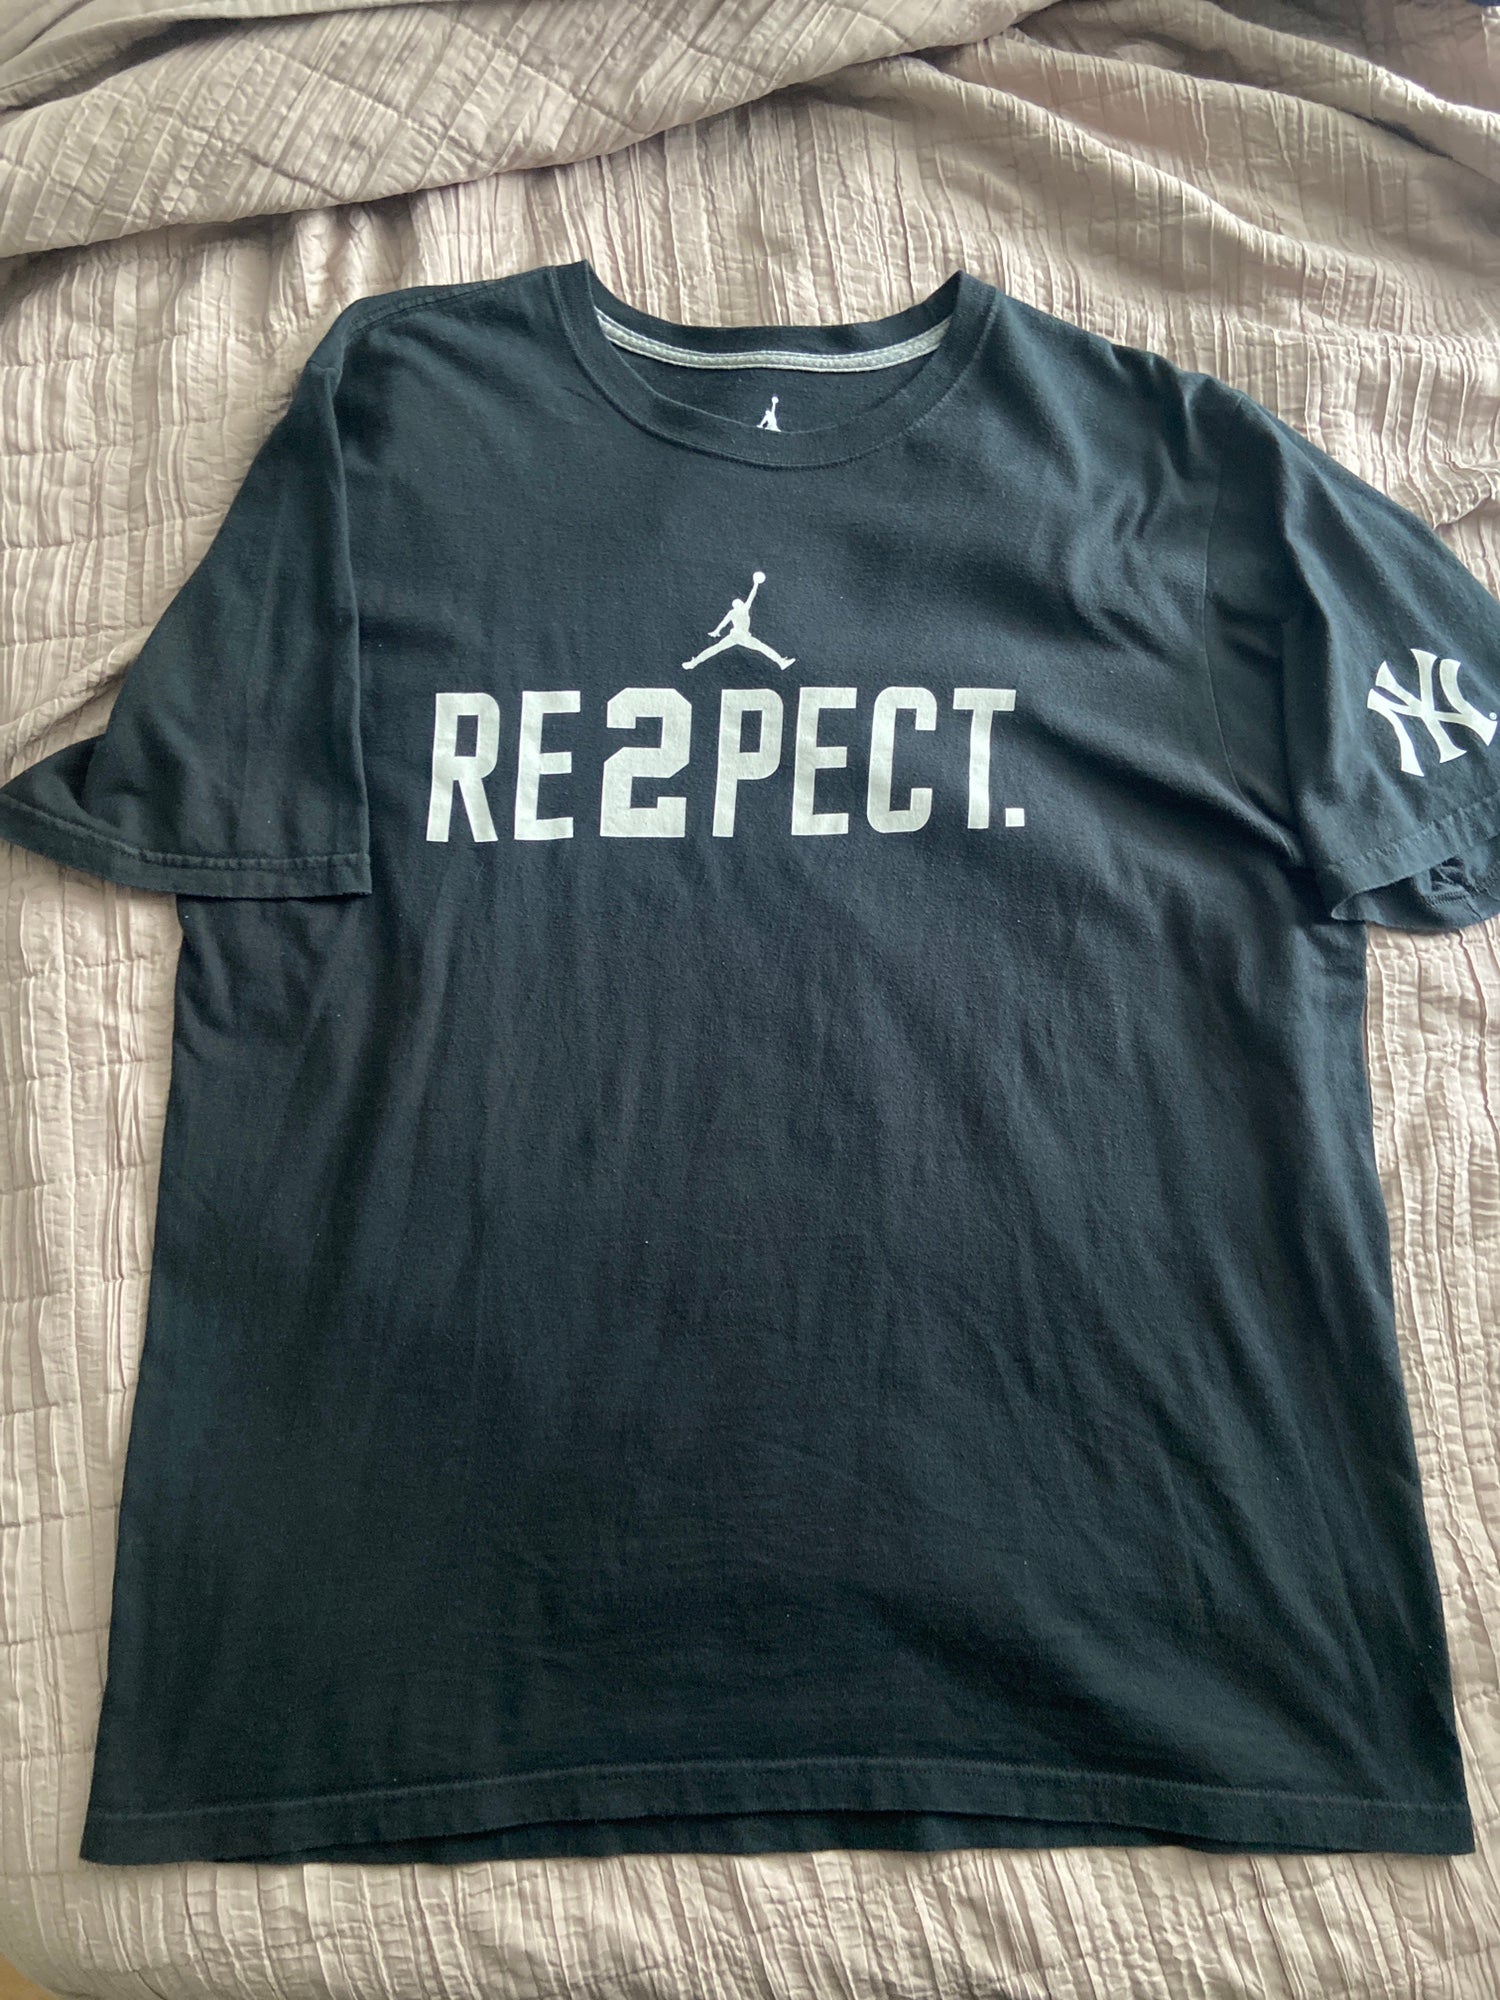 Respect Derek Jeter Long Sleeve T-shirt - Customon